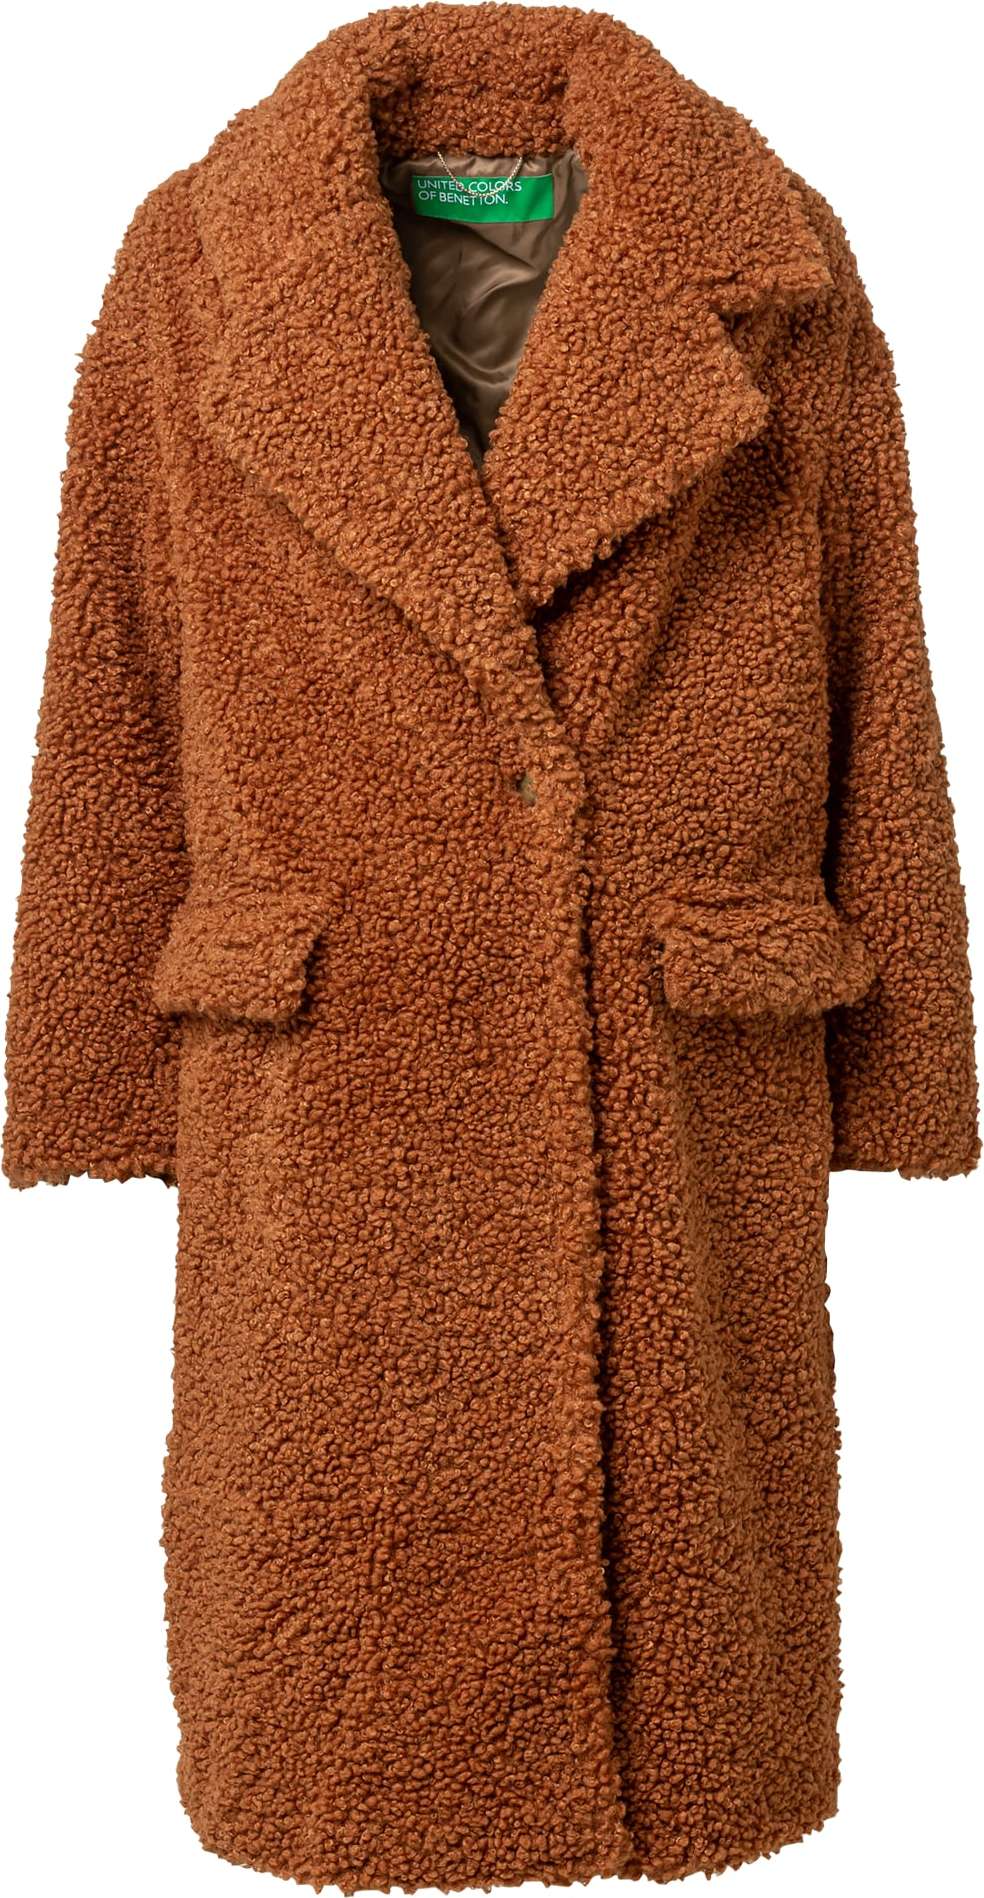 UNITED COLORS OF BENETTON Přechodný kabát karamelová